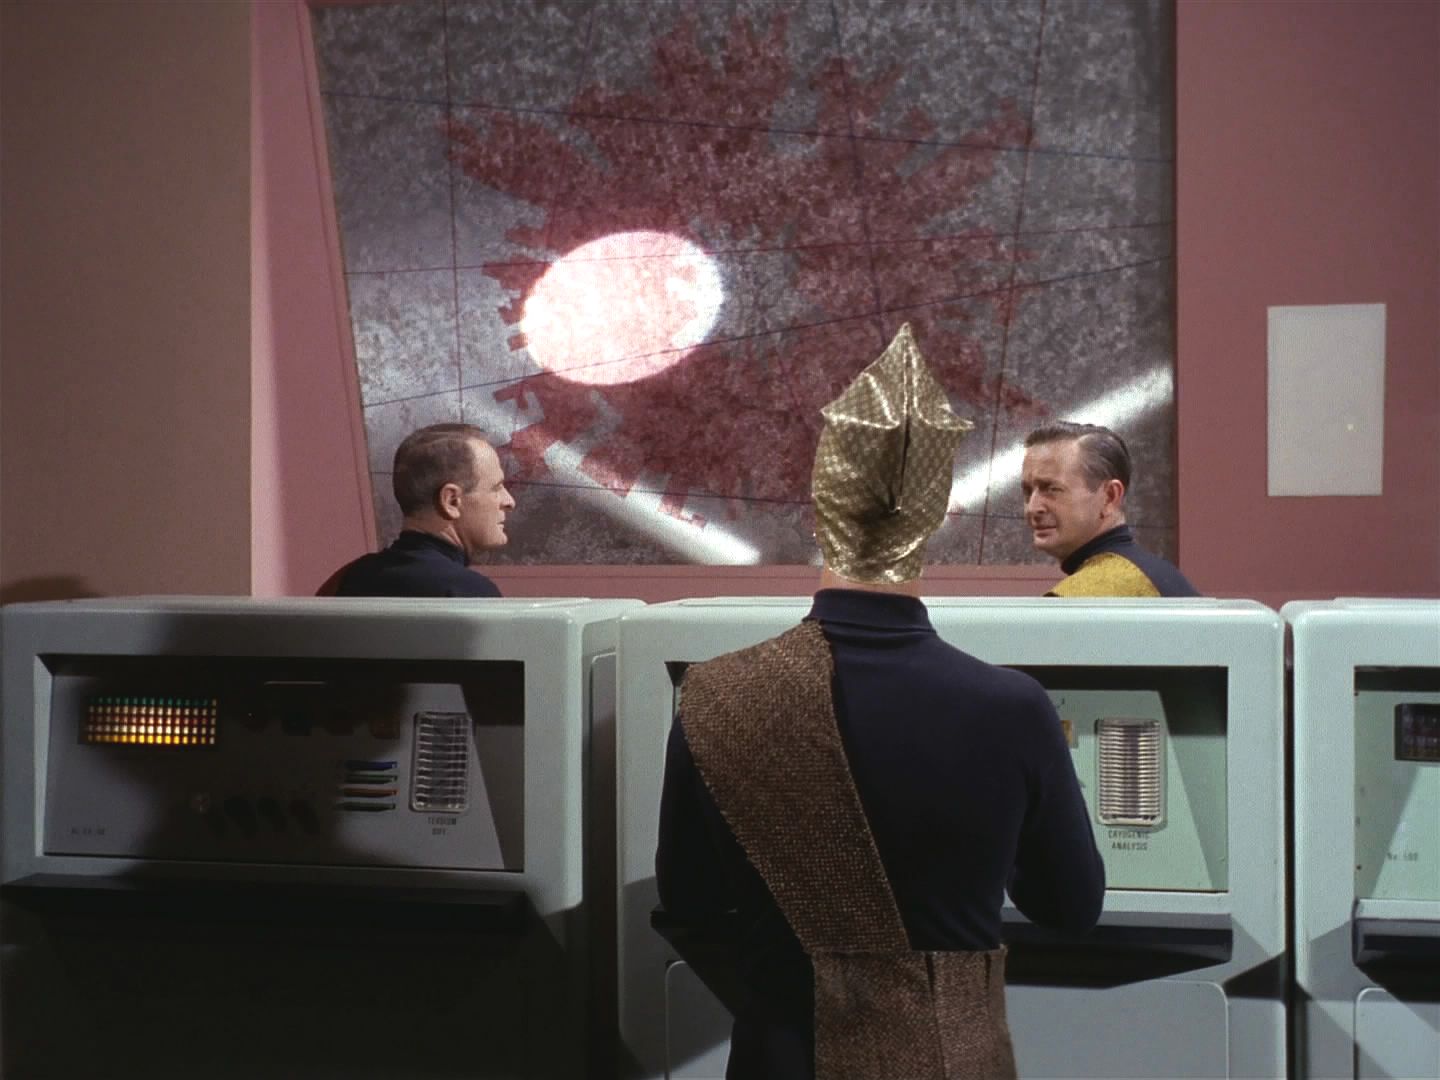 Došlo k útoku. Obětí se údajně stala i Enterprise. Výsadek je zatčen a personál lodi se musí dostavit k dezintegraci. Válku totiž vedou počítače, jen dobrovolné oběti jsou skutečné.